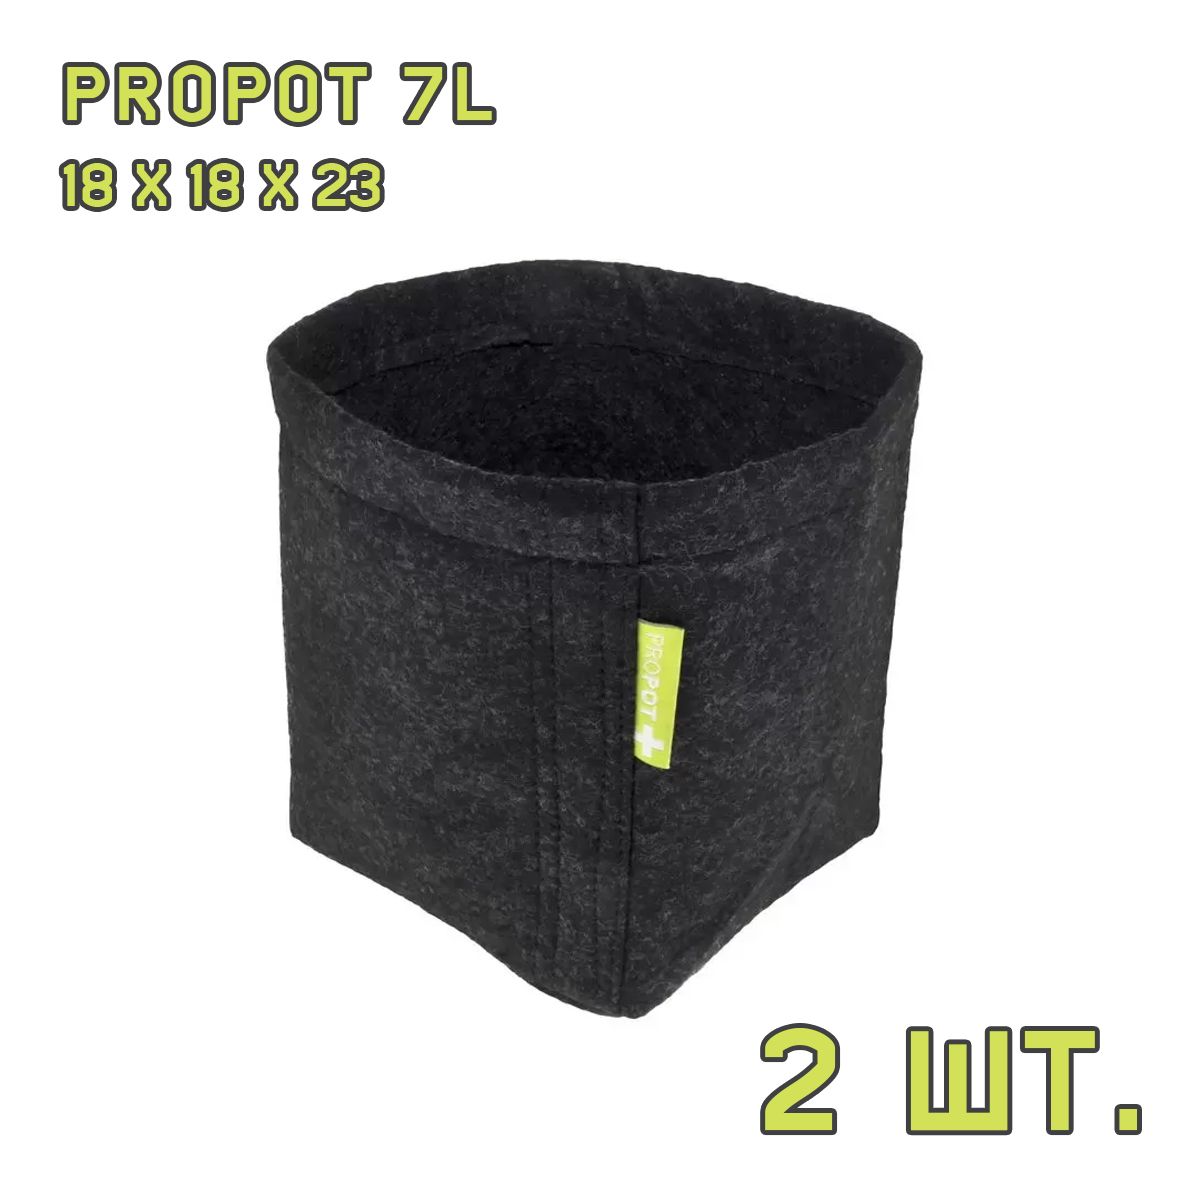 Текстильный горшок PROPOT 7L 2 шт.